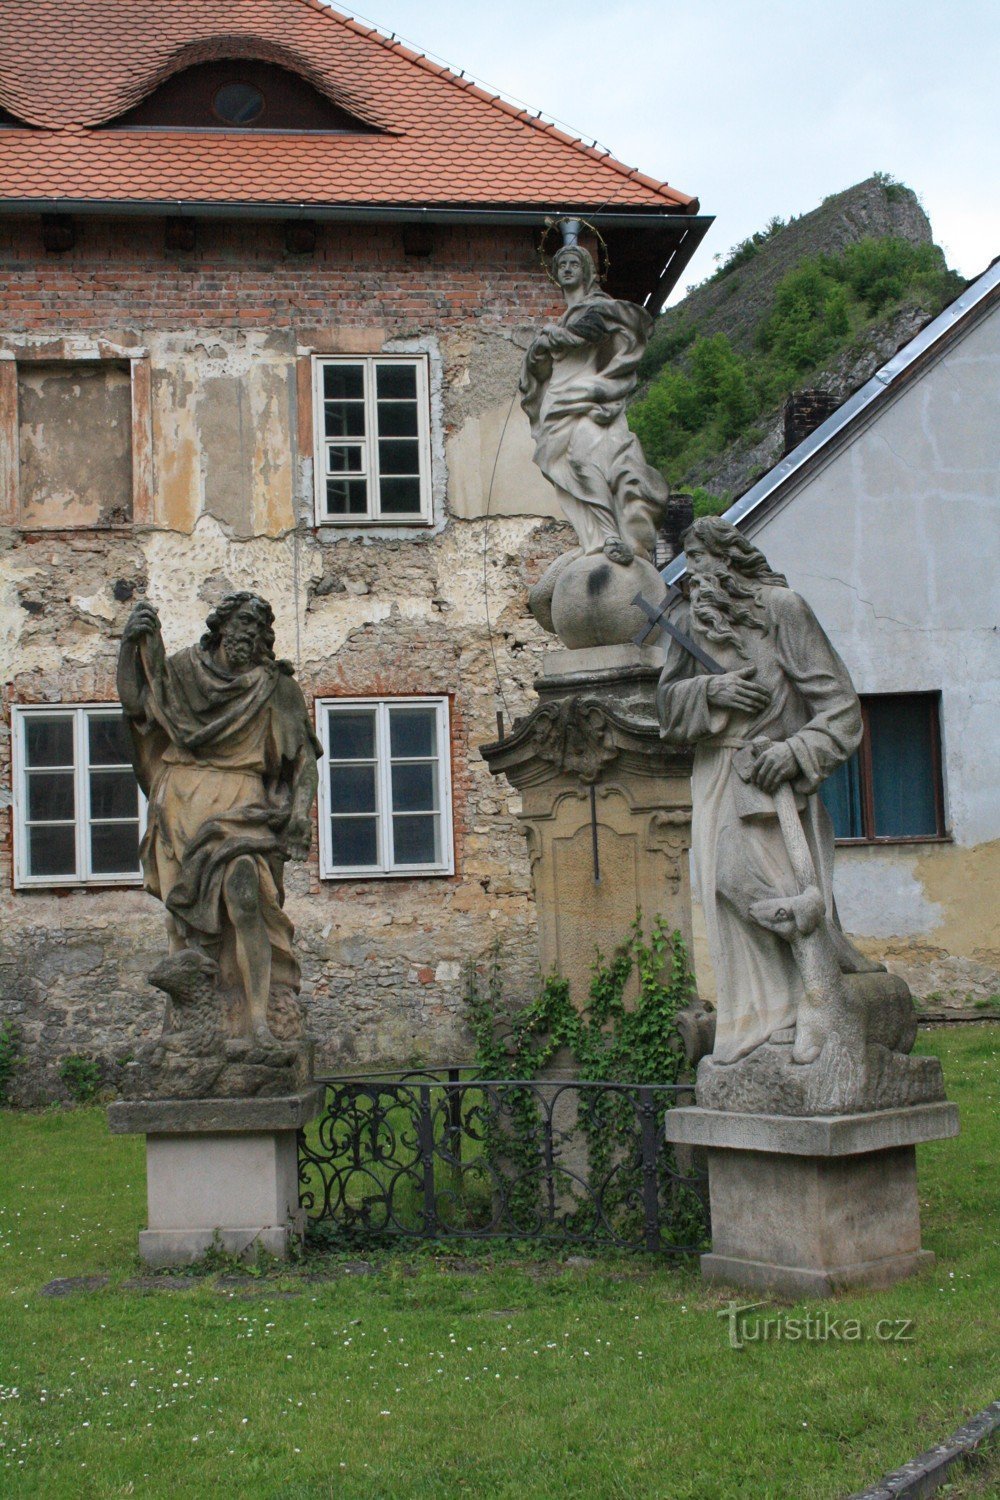 Ο Άγιος Ιωάννης κάτω από τον Βράχο και το άγαλμα στο χωριό